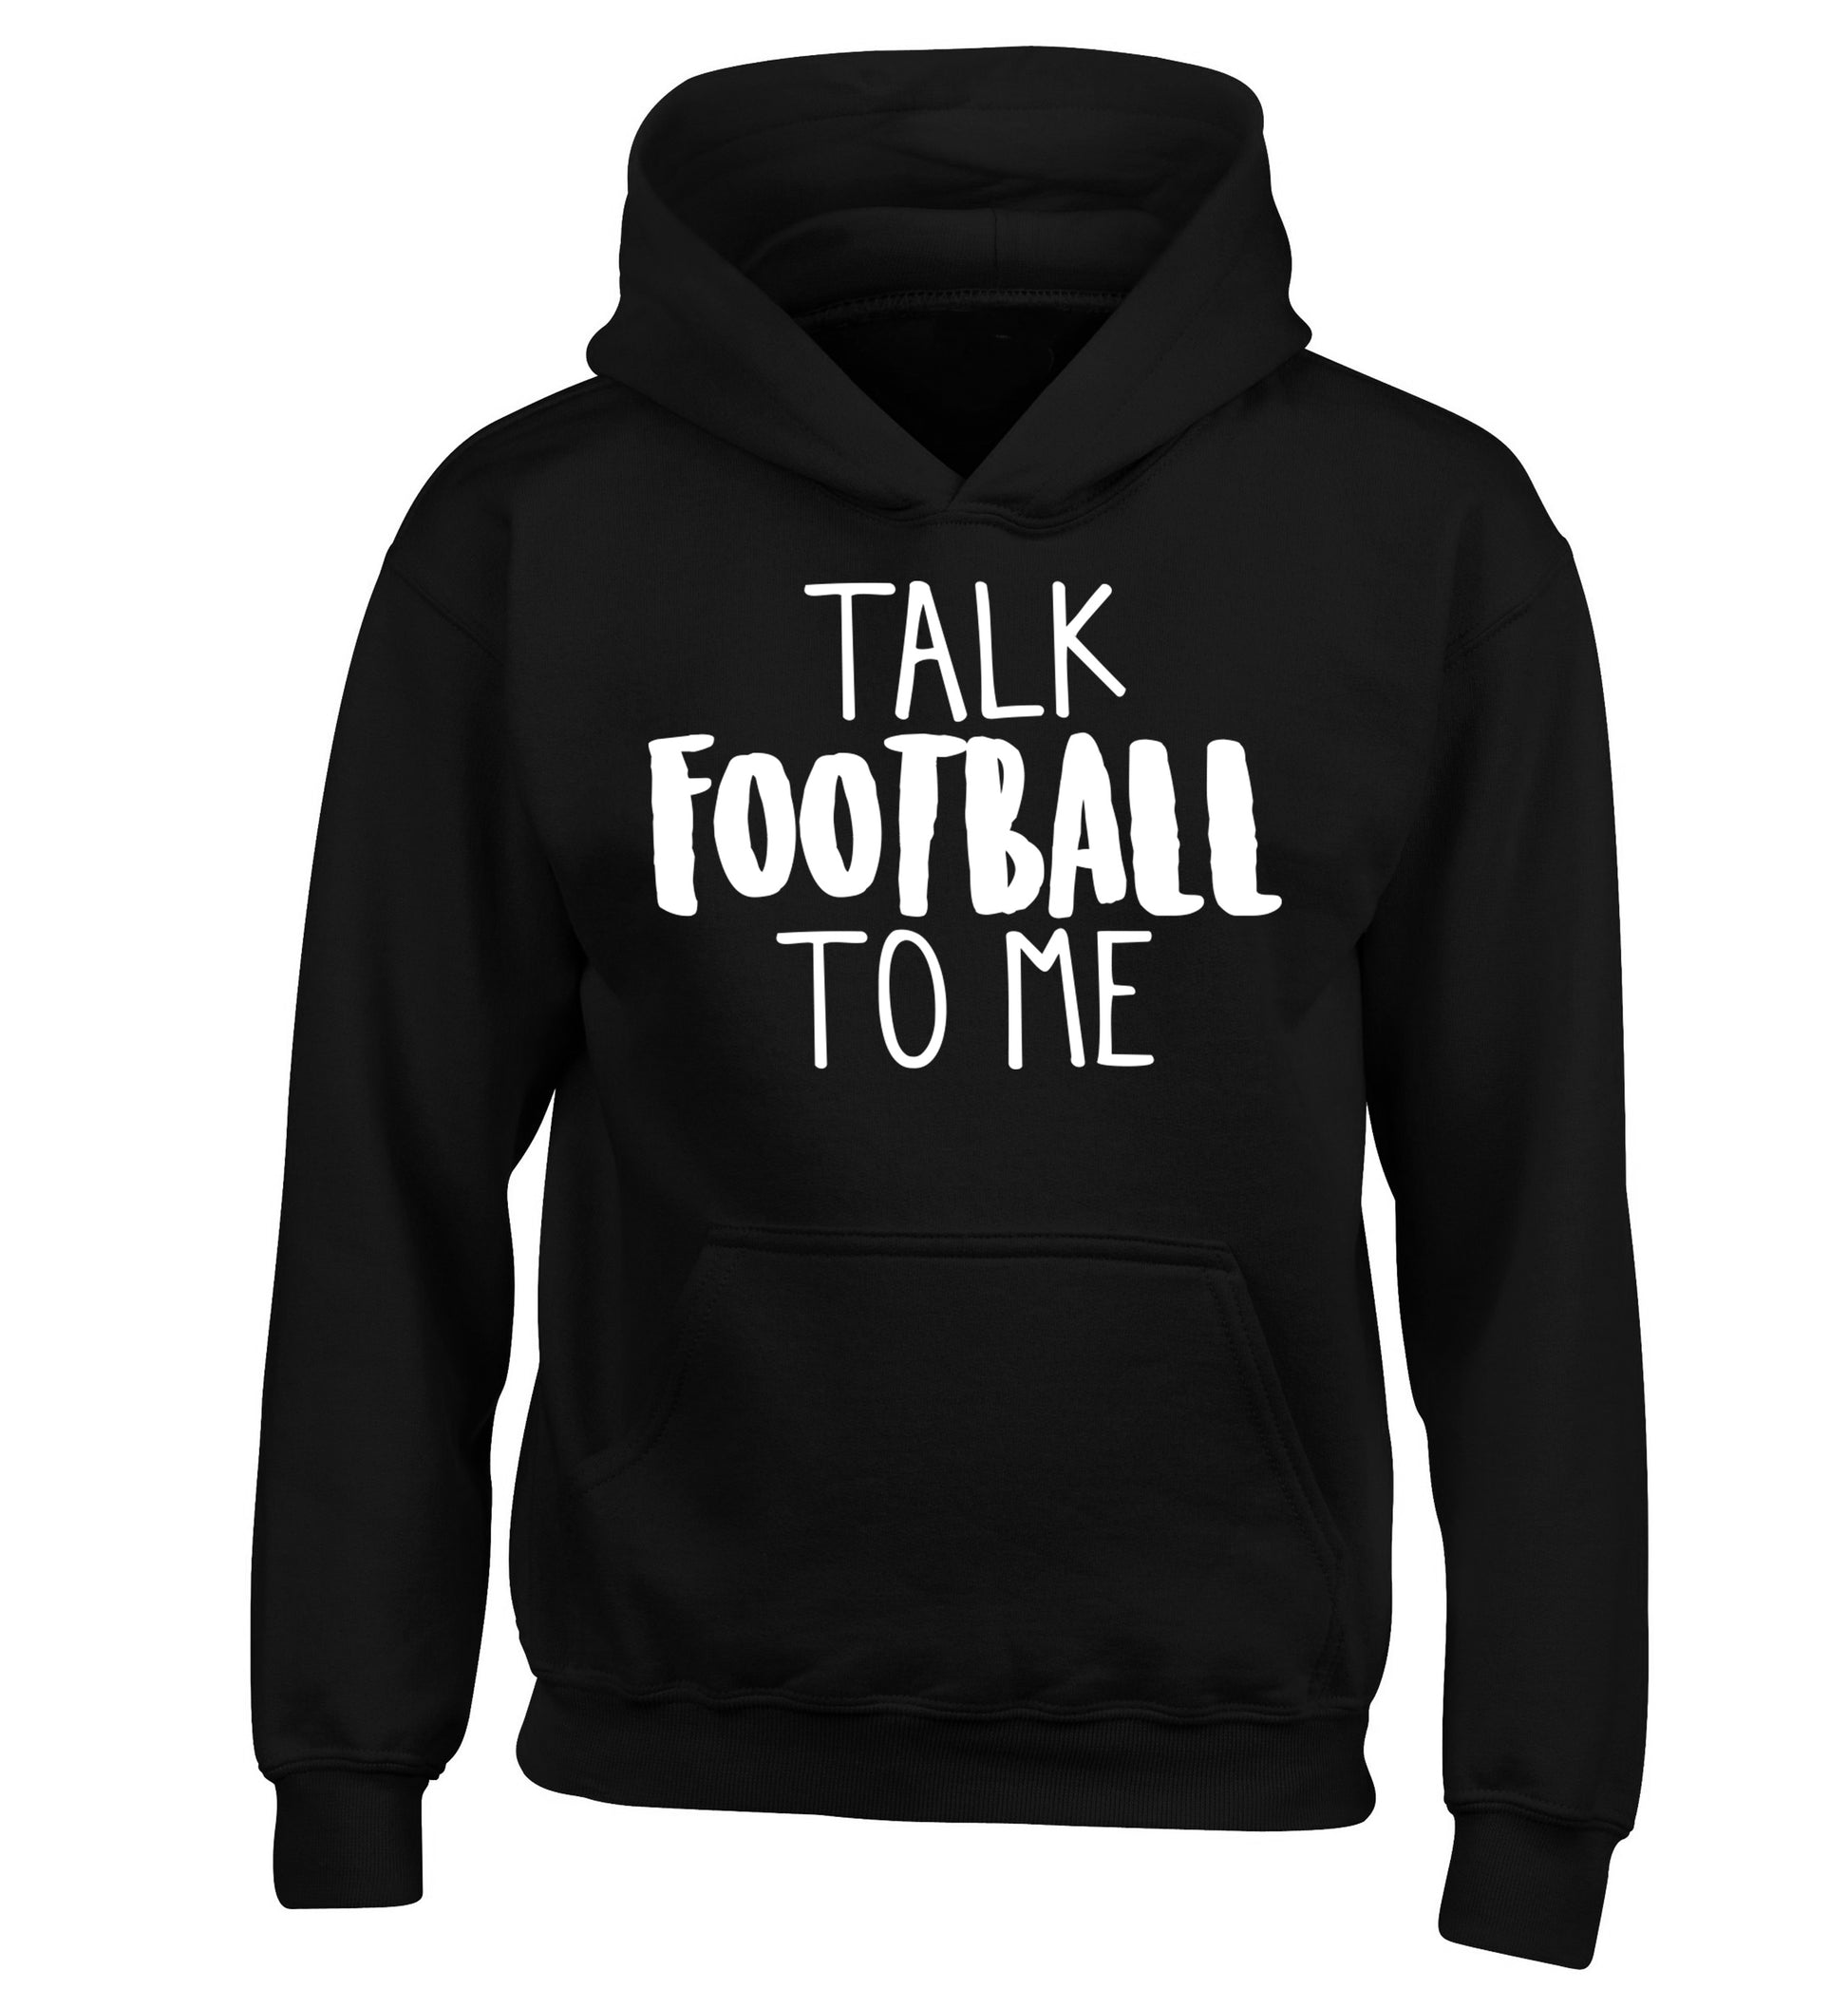 Talk football to me children's black hoodie 12-14 Years